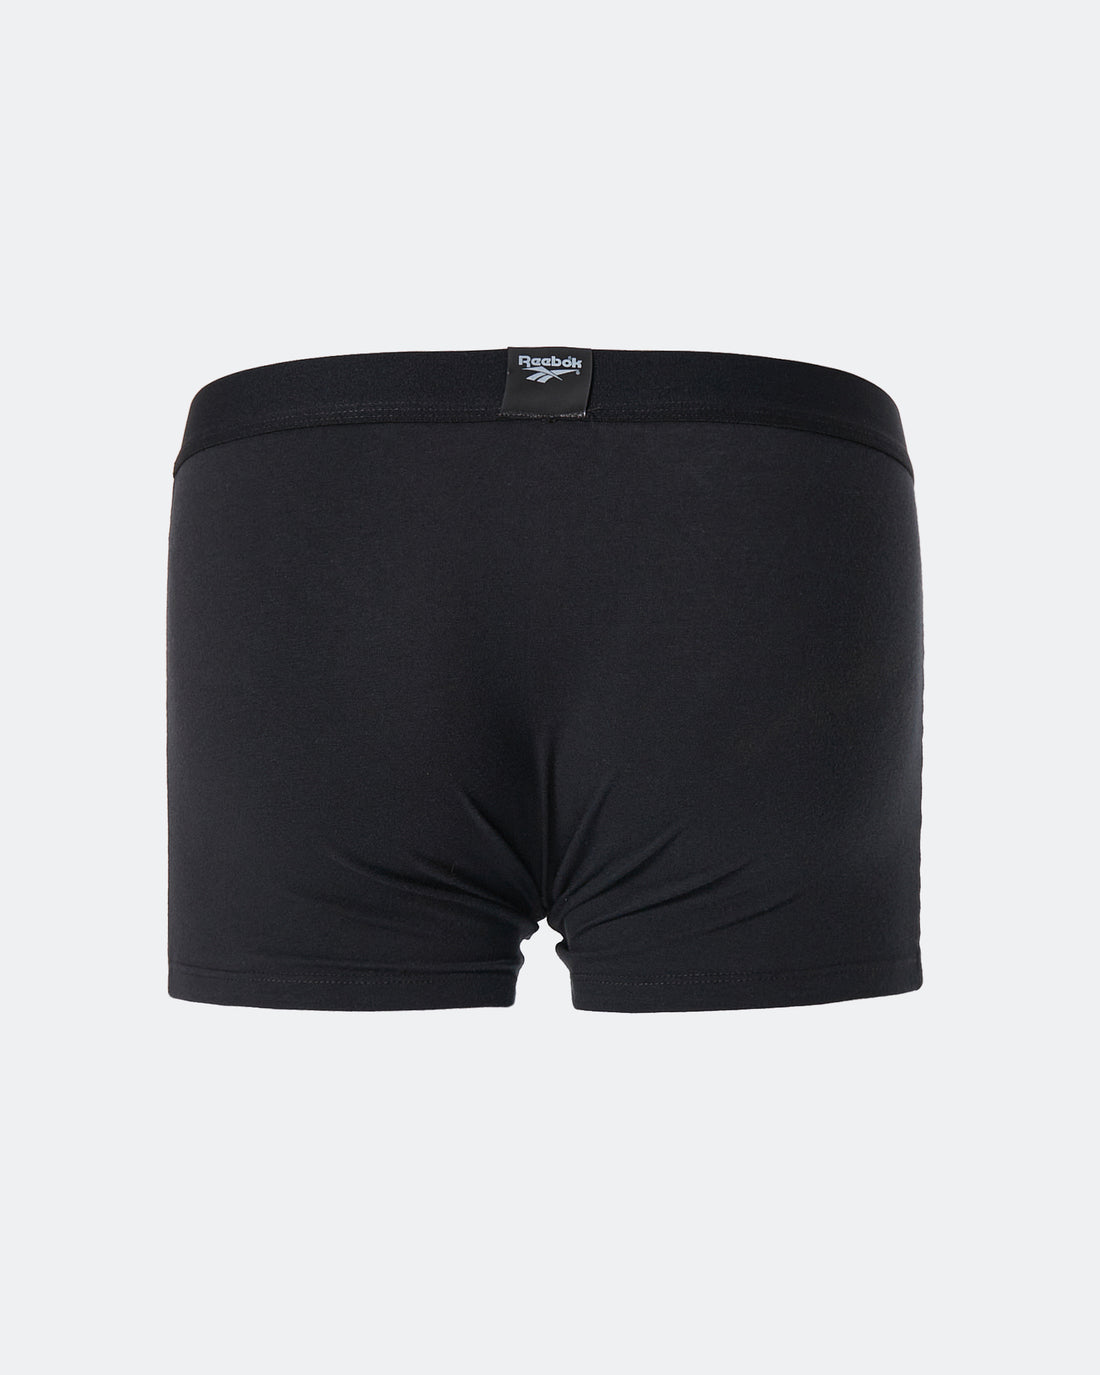 REE Waistband Printed Men Black Underwear 5.90